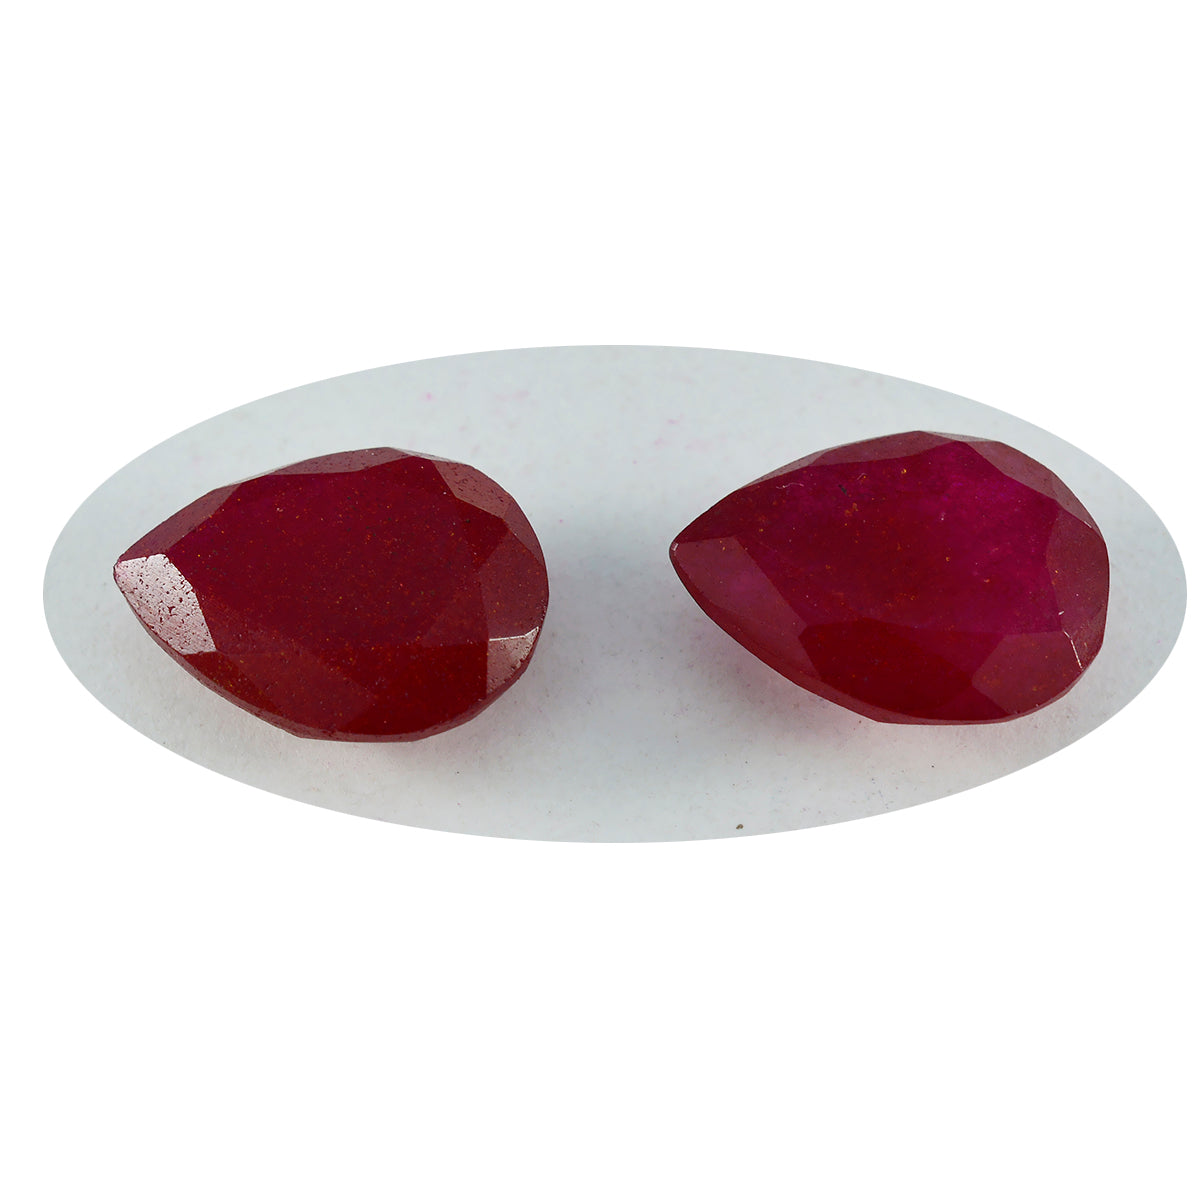 riyogems 1 pezzo di diaspro rosso autentico sfaccettato 8x12 mm a forma di pera, gemma sfusa di grande qualità